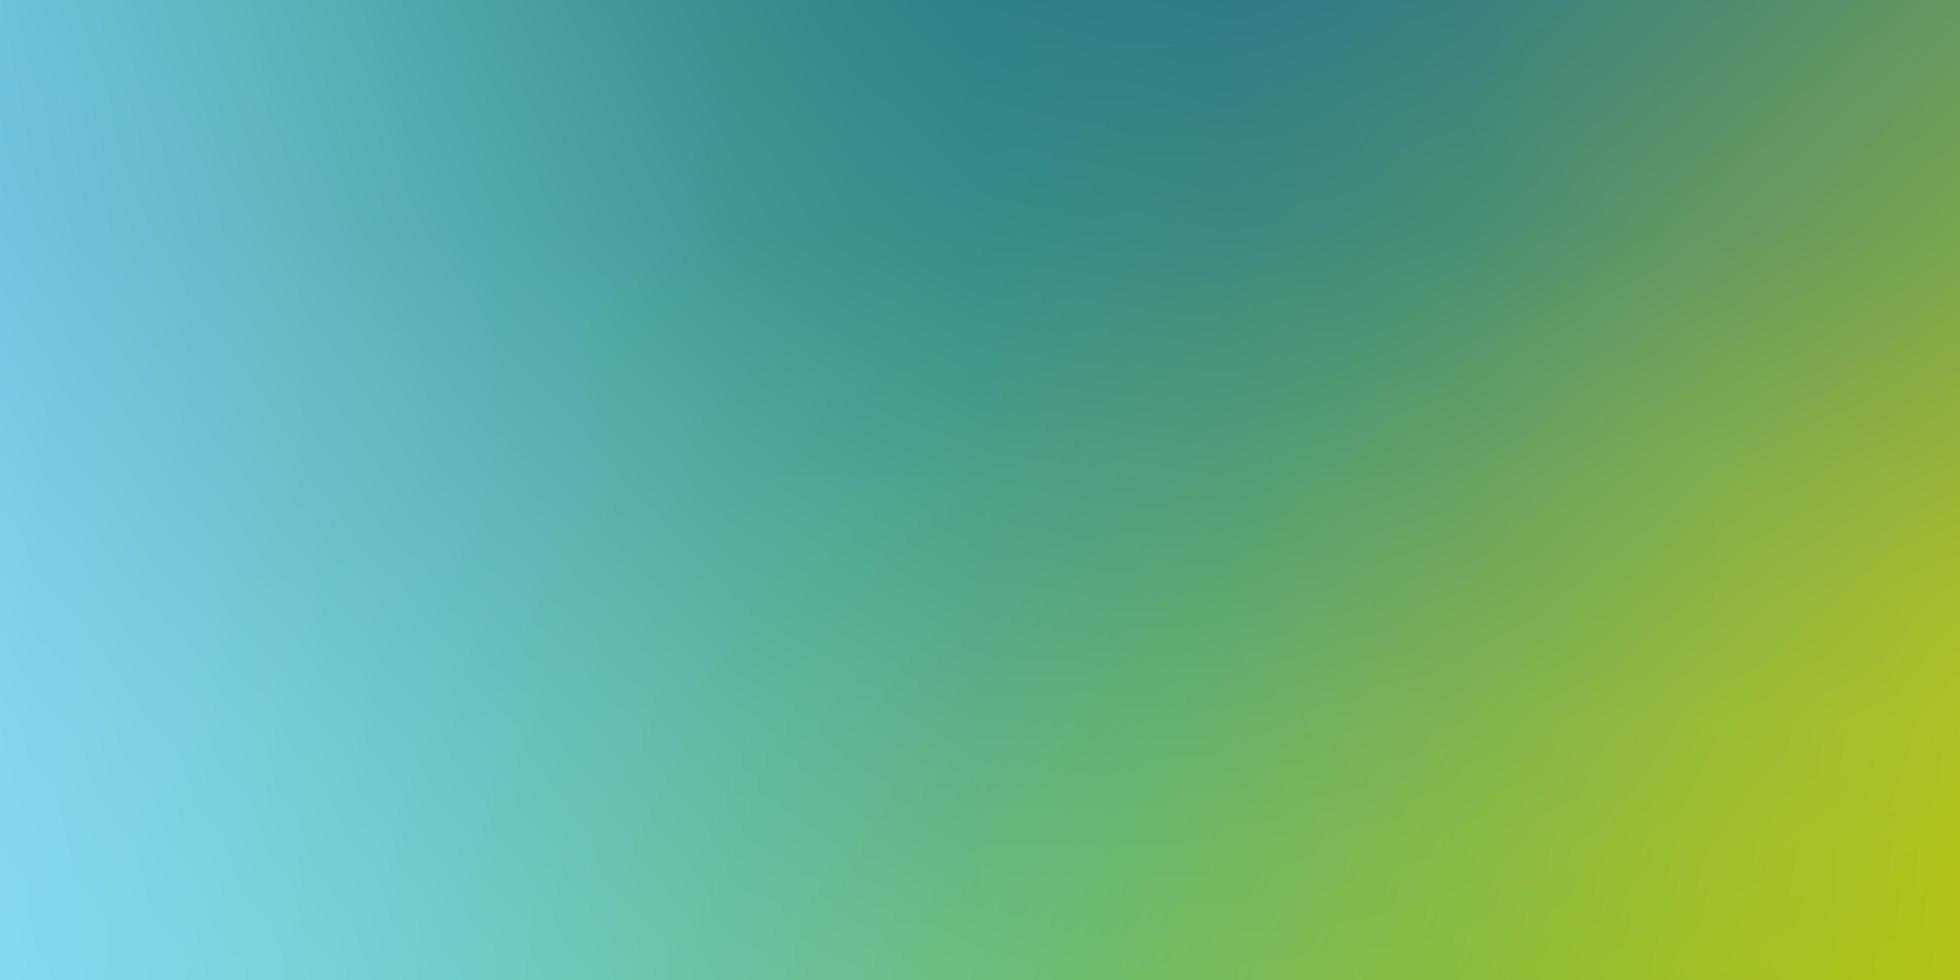 licht blauw groen vector abstract helder patroon gradiënt abstracte illustratie met vage kleuren elegante achtergrond voor websites